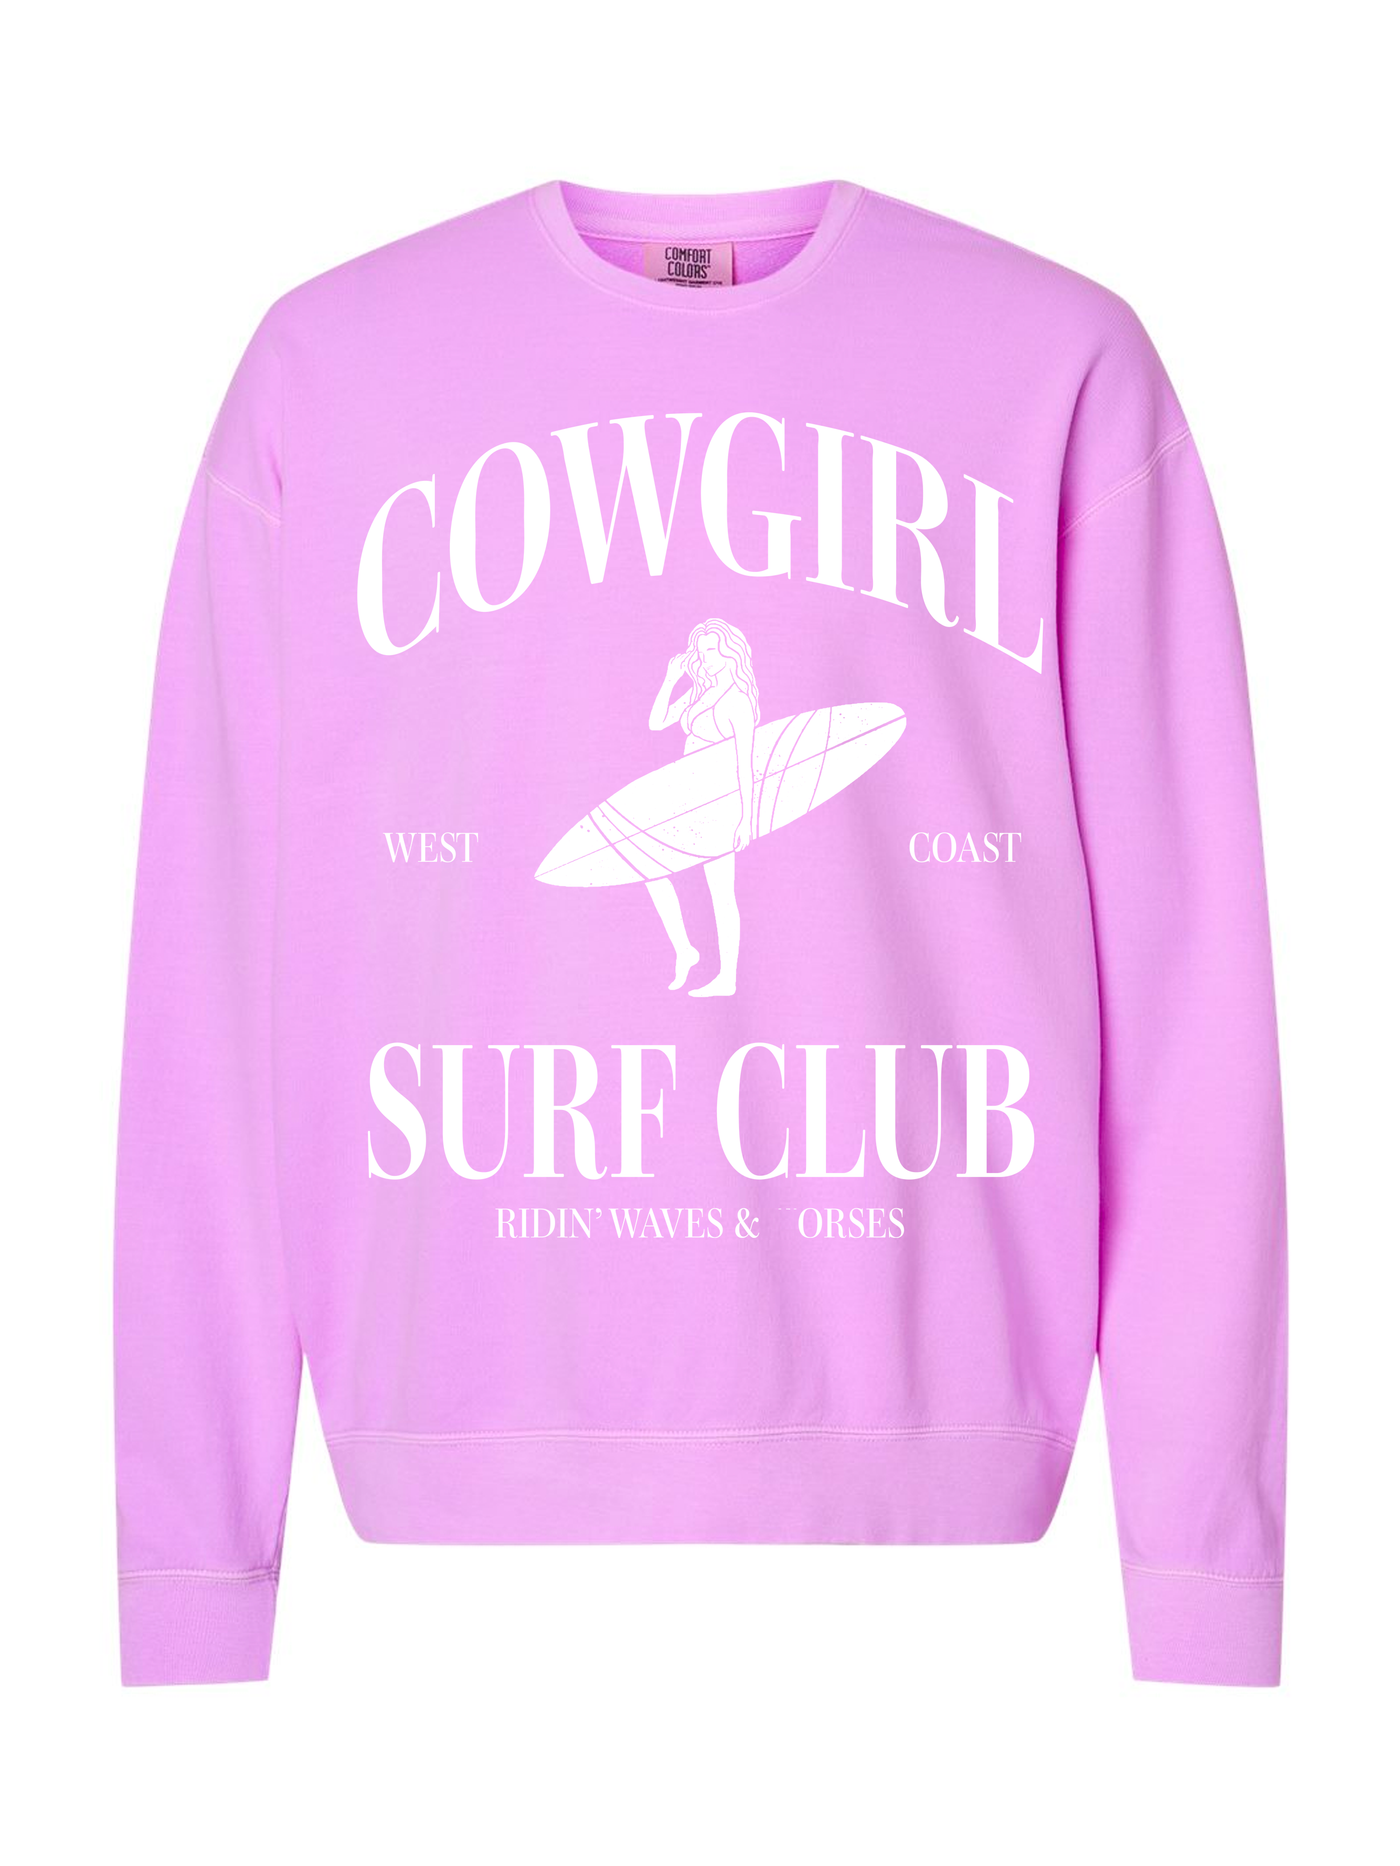 Cowgirl Surf Club Tee/Sweatshirt